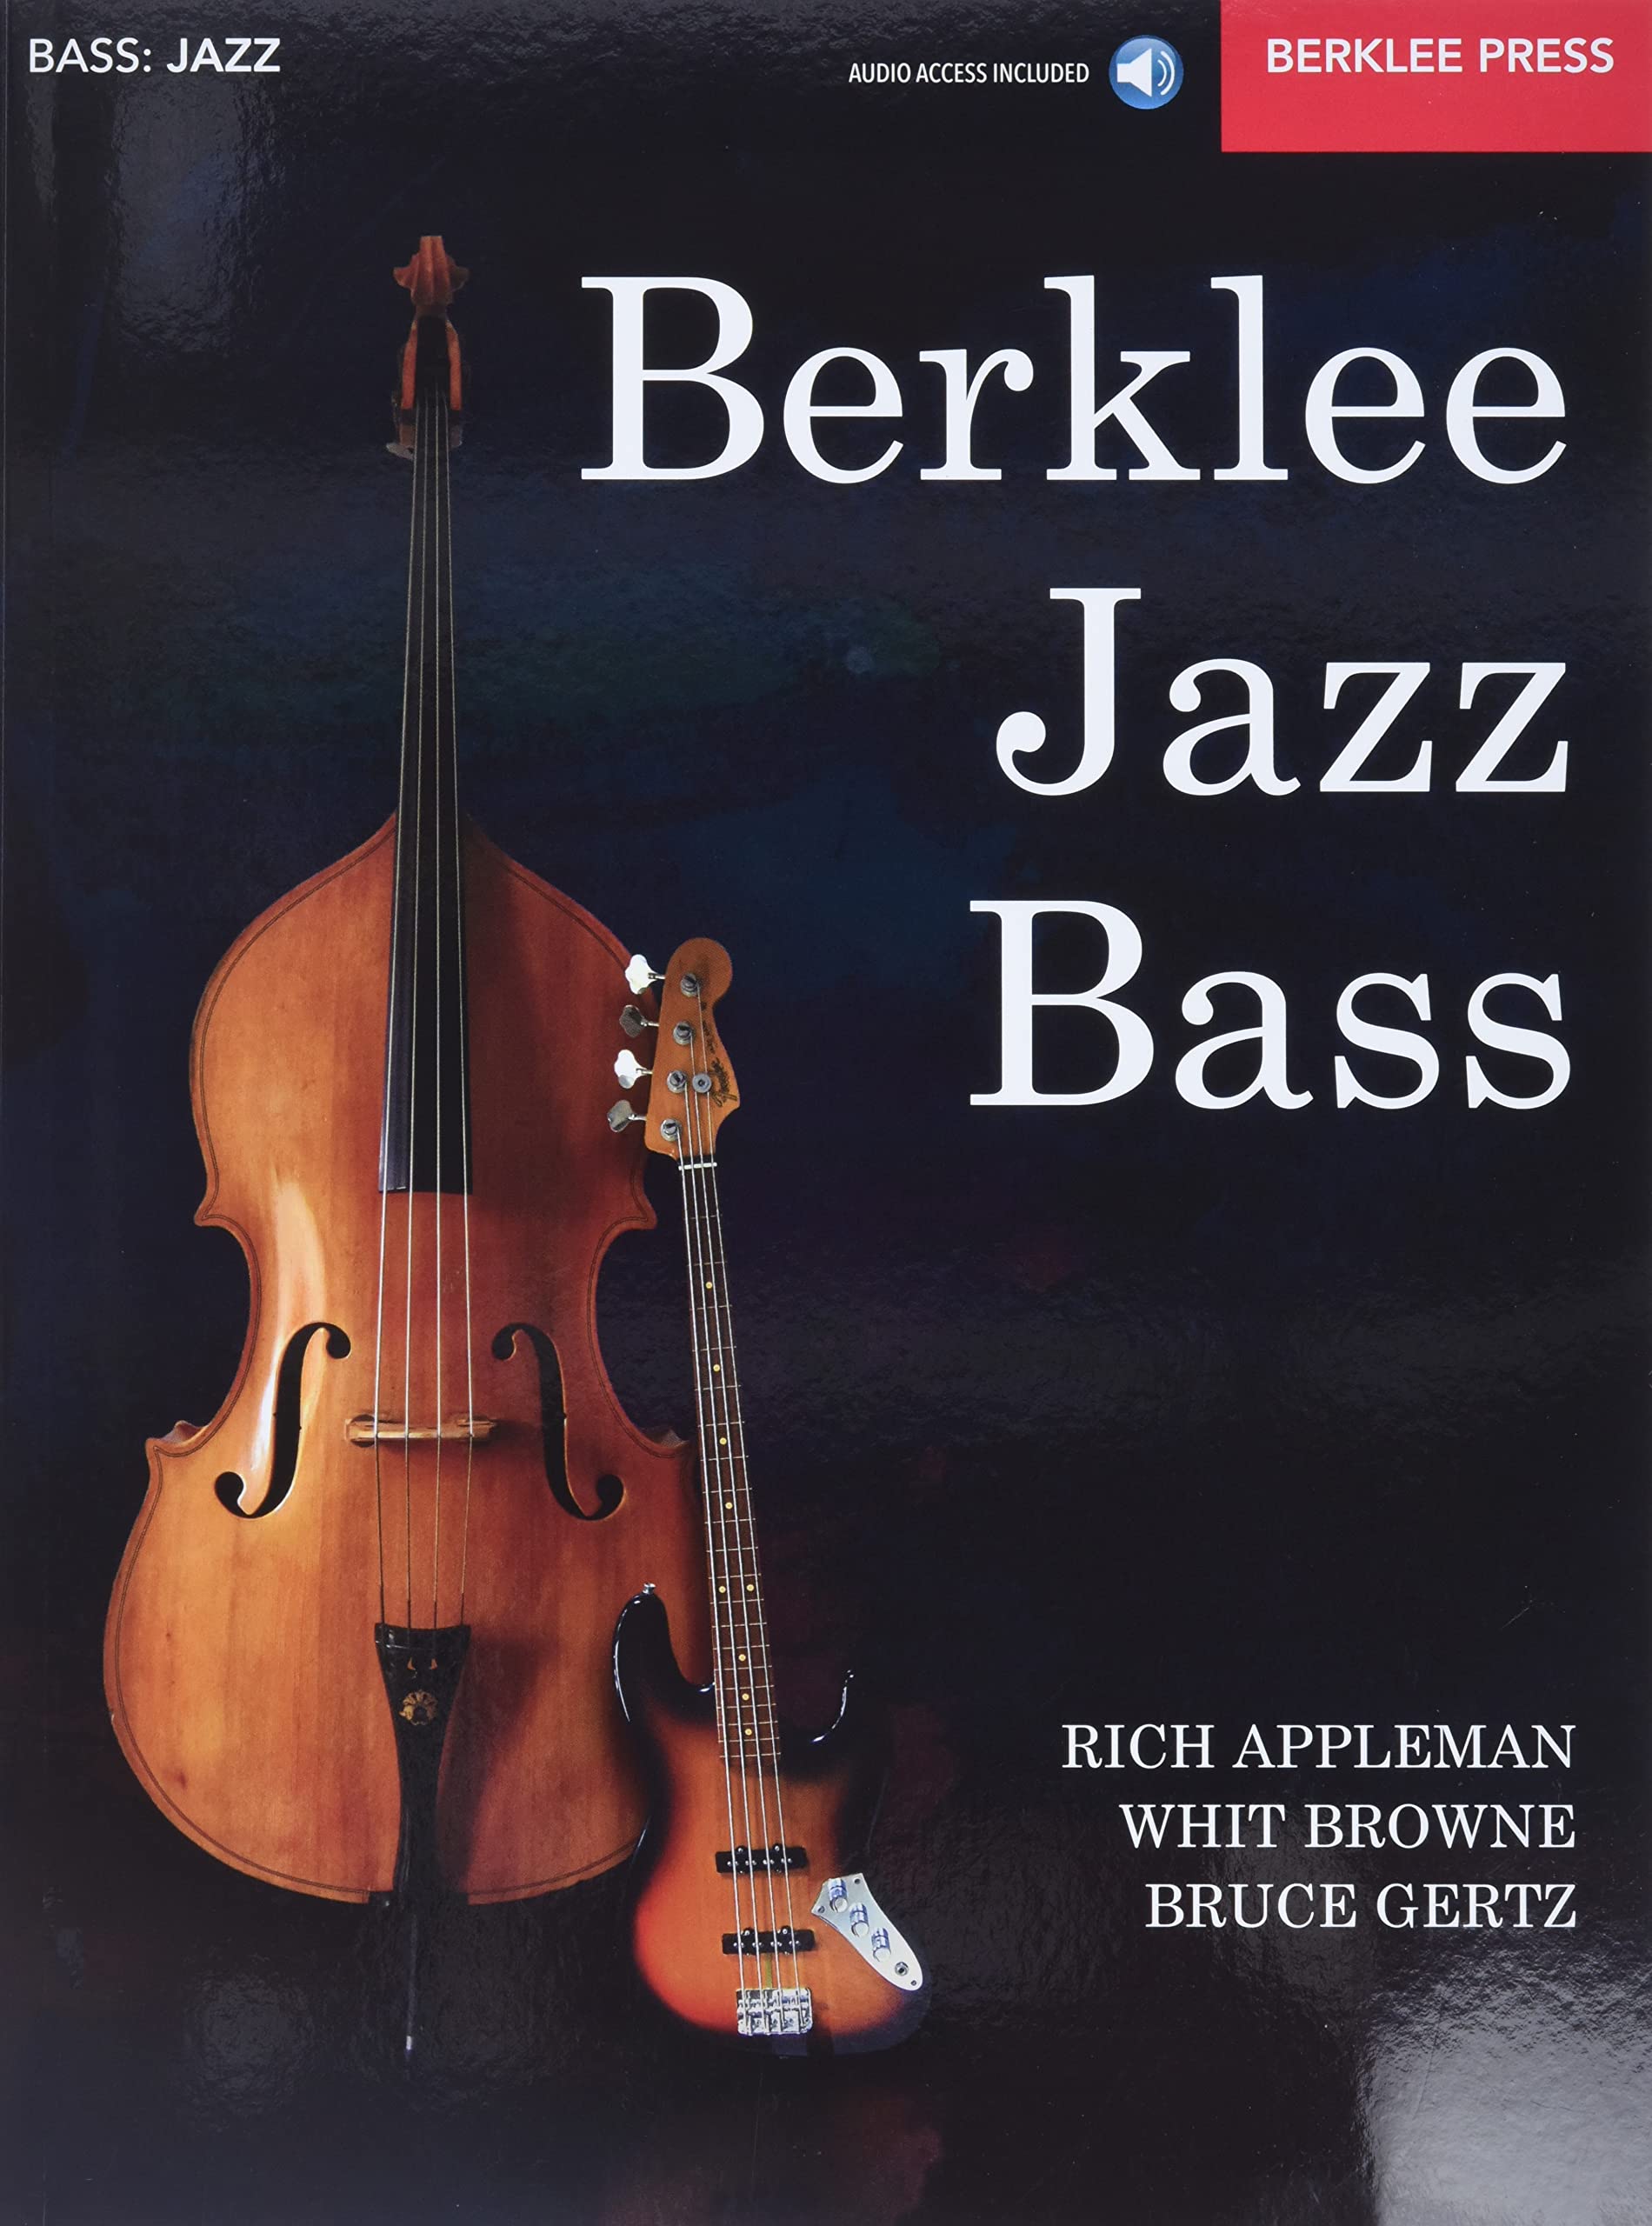 Berklee Jazz Bass: Acoustic & Electric (Book/Online Audio) 9780876391693 · 0876391693 · 0876391692